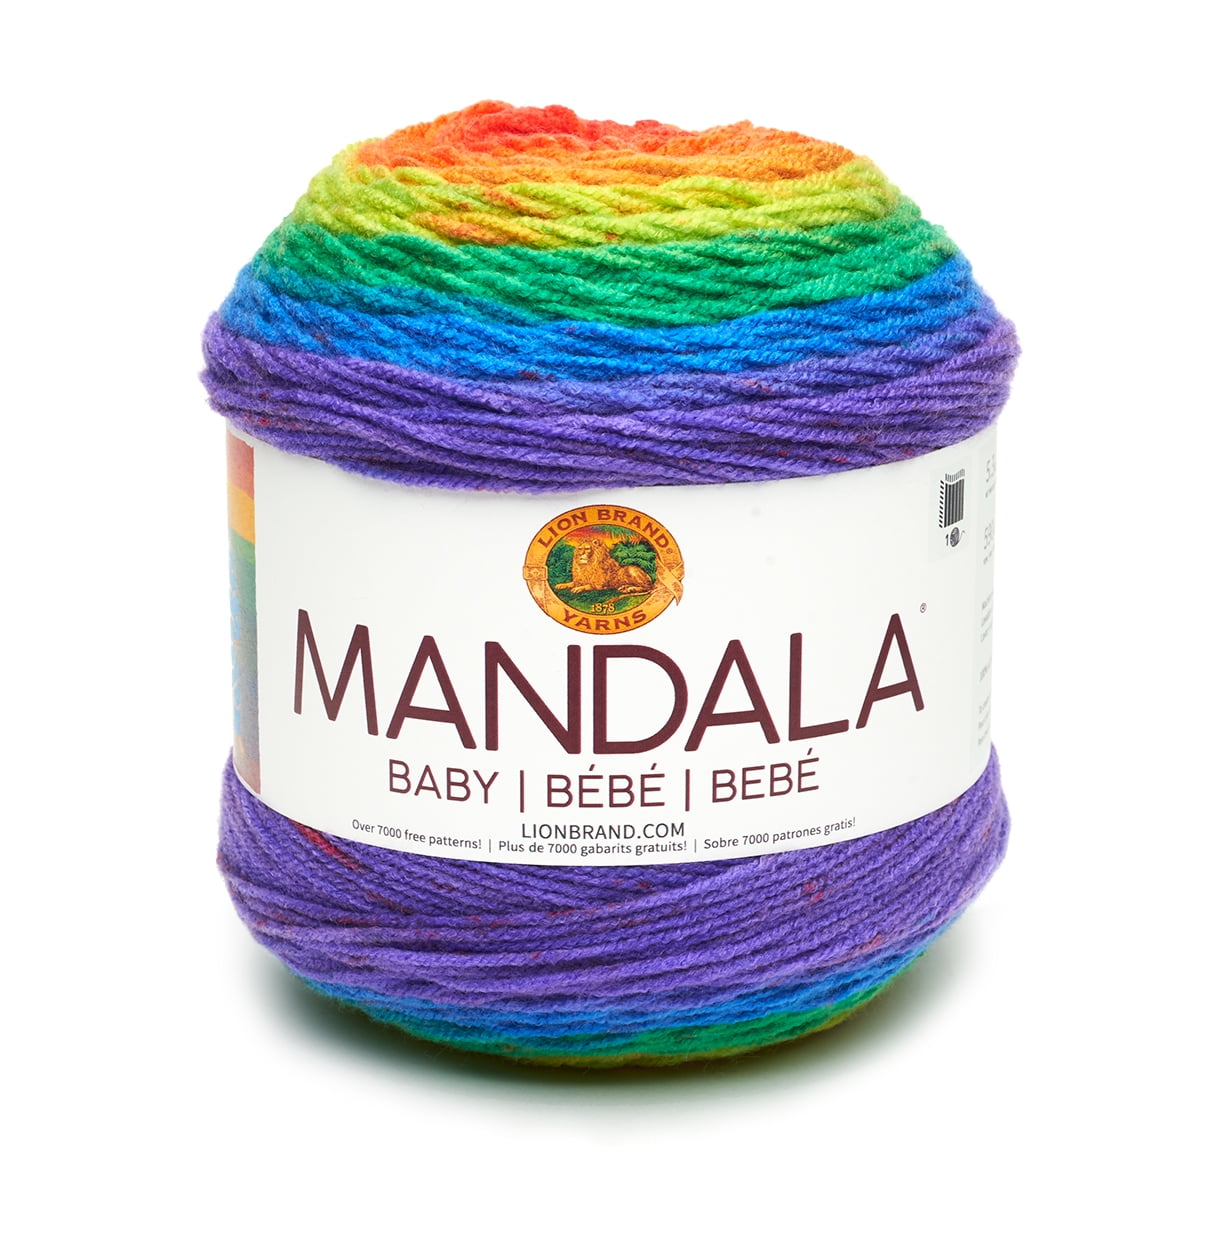 Baby Star Yarn multicolor